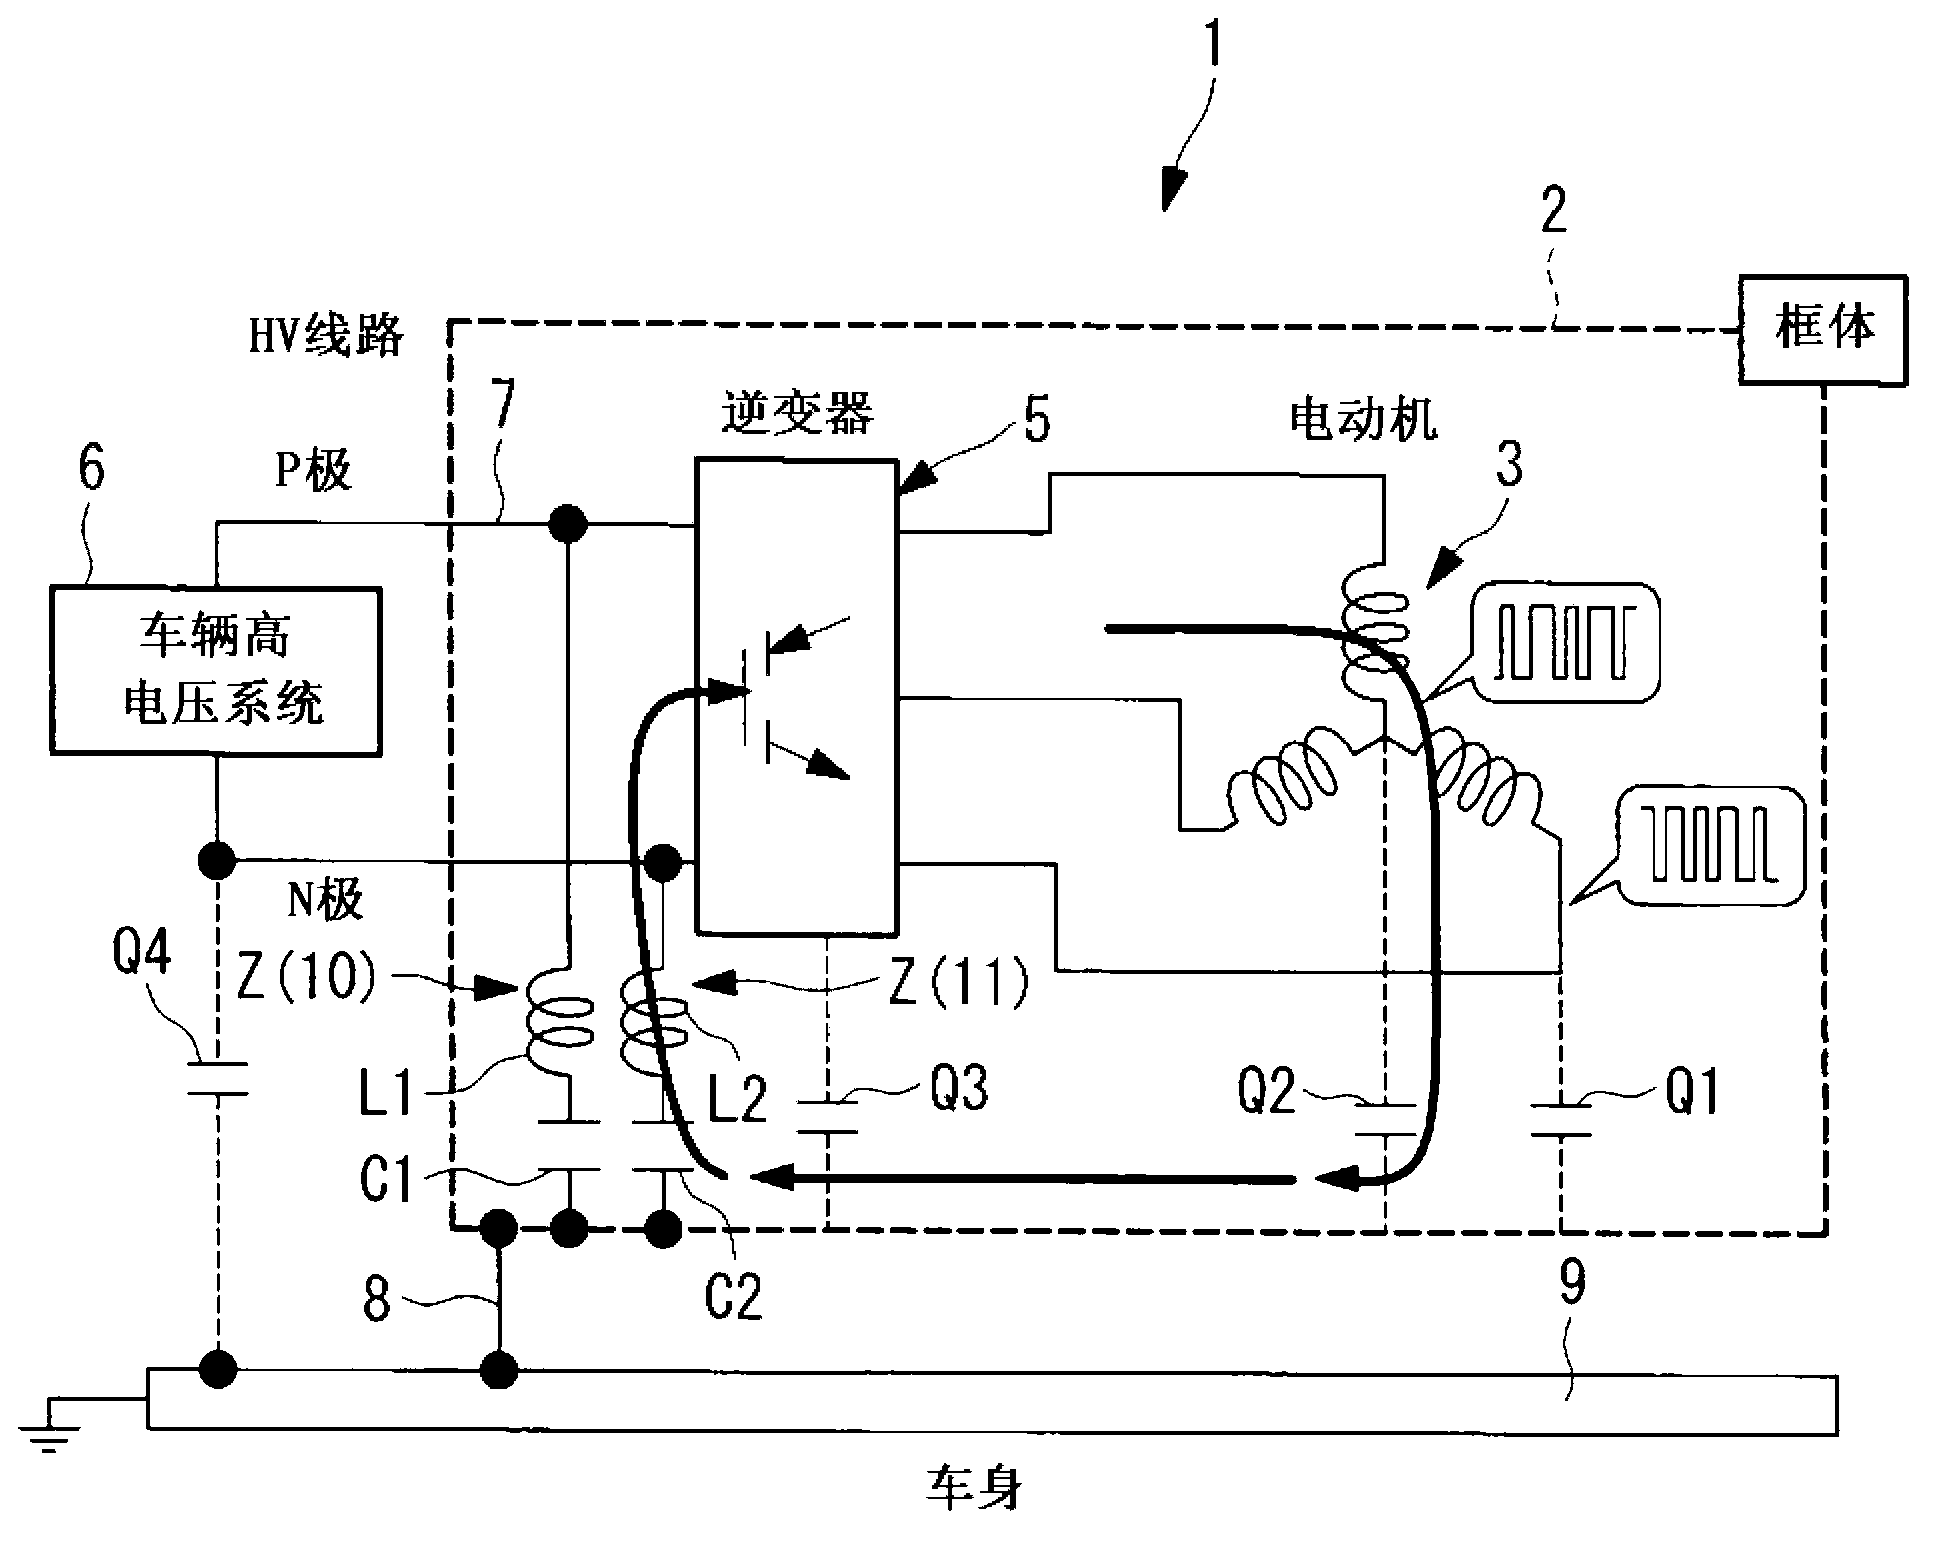 Inverter integrated motor-driven compressor